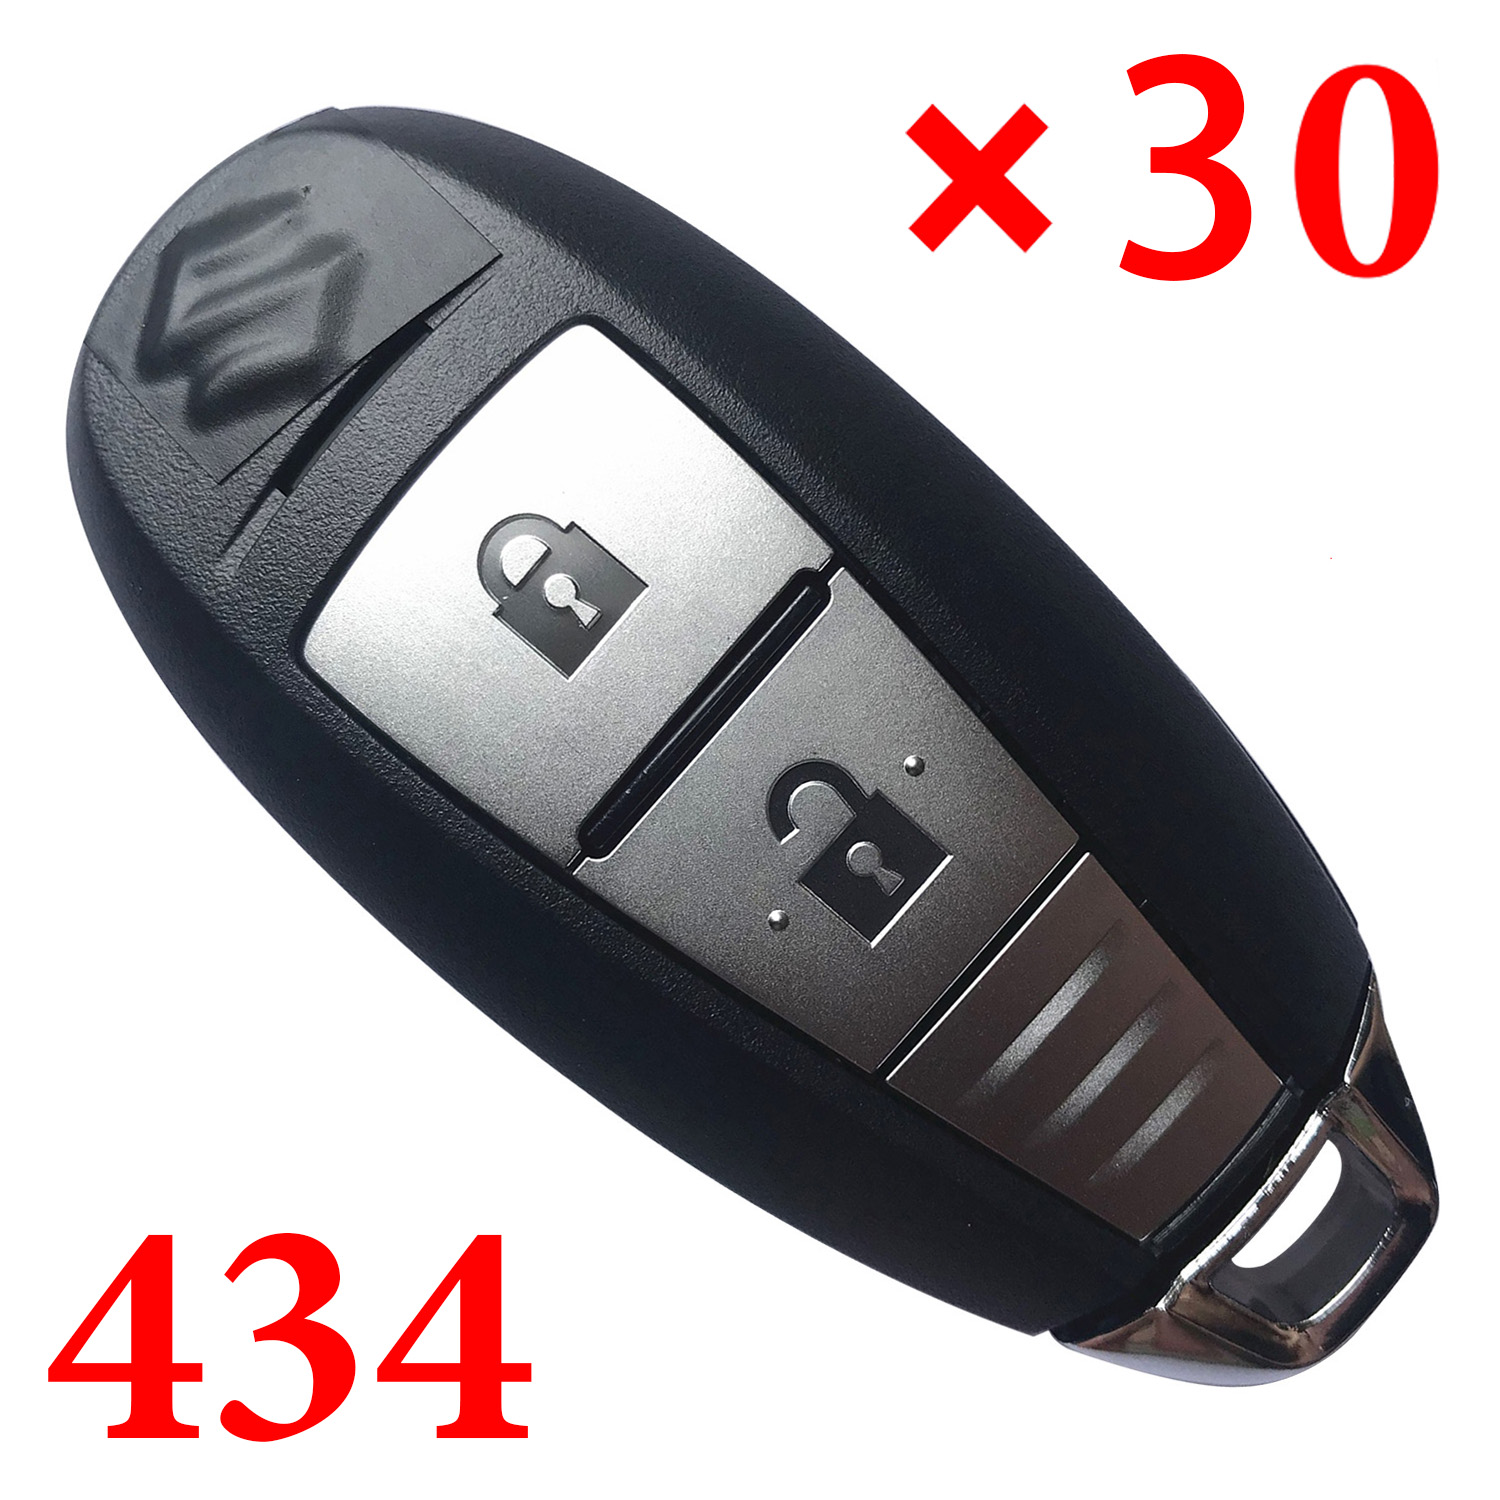 Original 2 Buttons 434 MHz Smart Proximity Key for Suzuki Vitara - CMIIT ID: 2013DJ1464 - R64M0 - Pack of 30